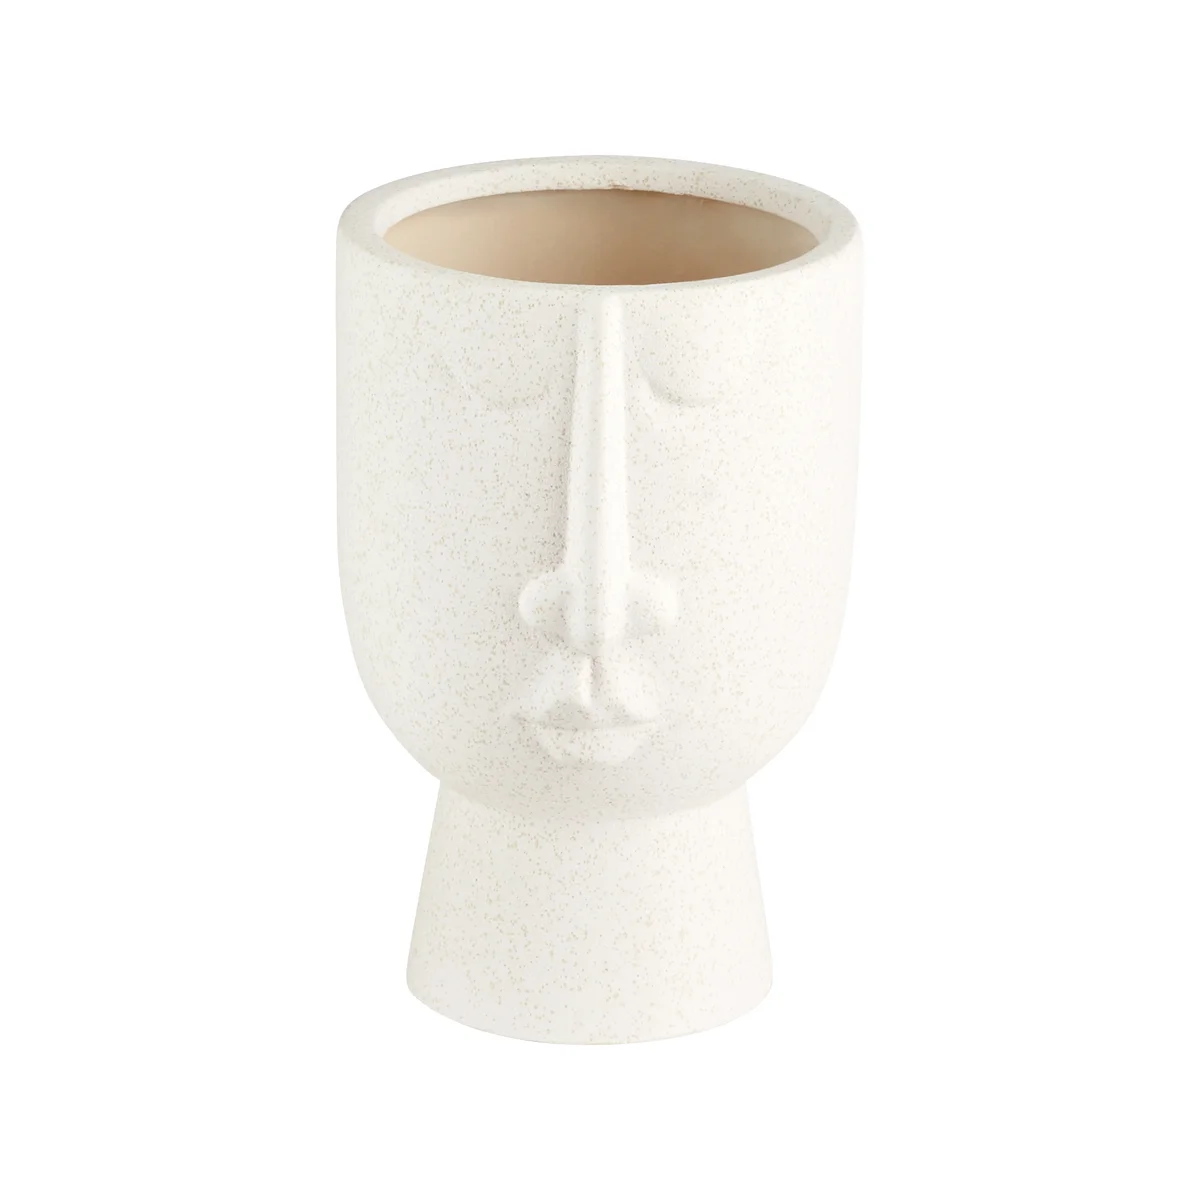 Mother Vase | White